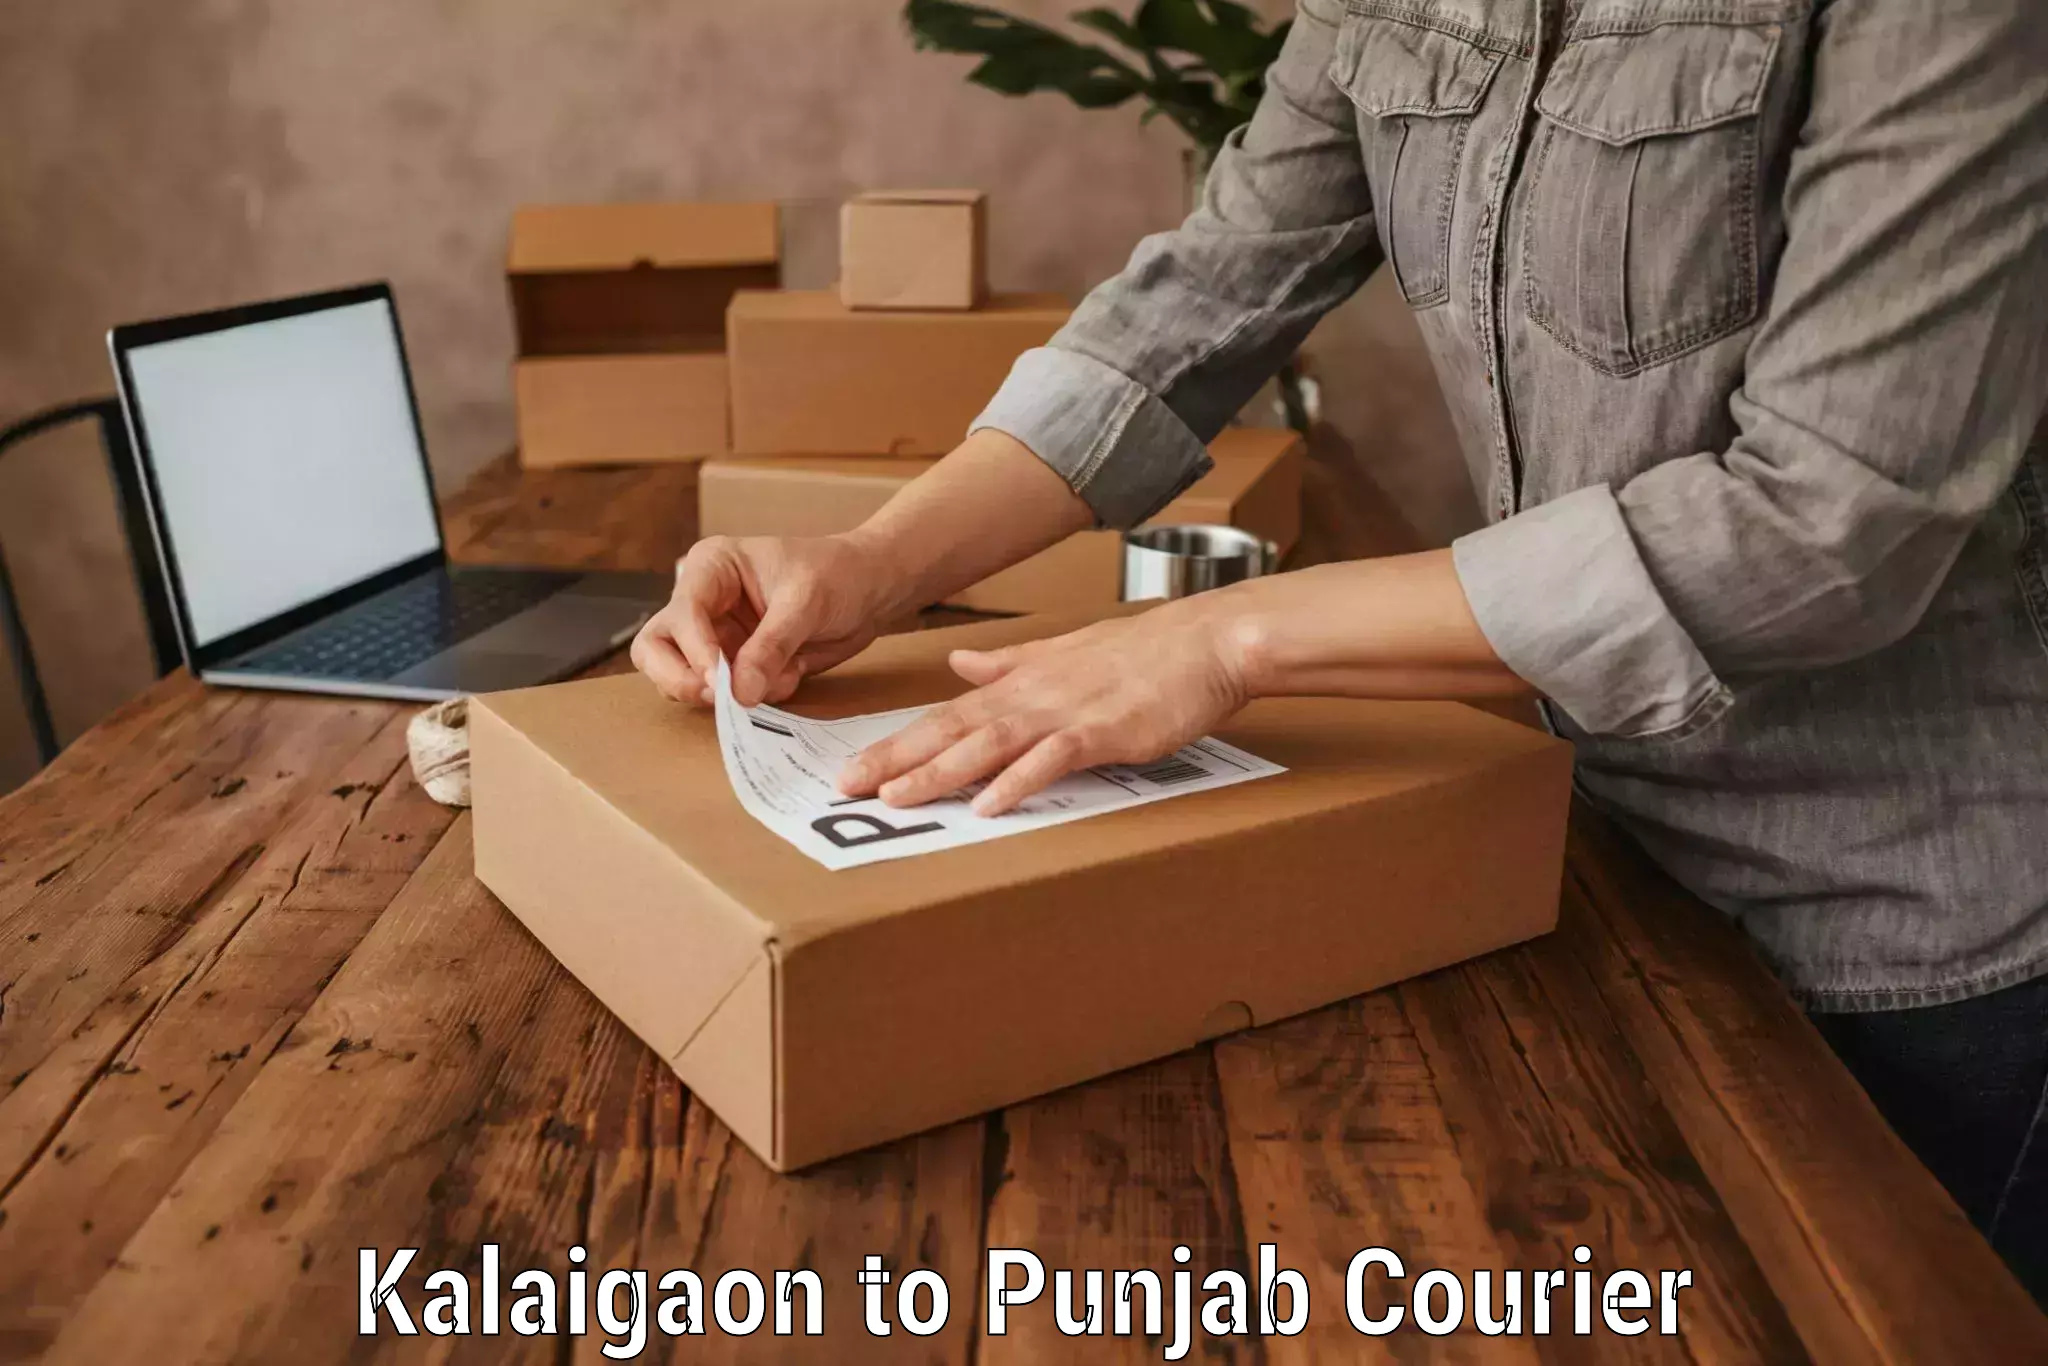 Luggage dispatch service Kalaigaon to Punjab